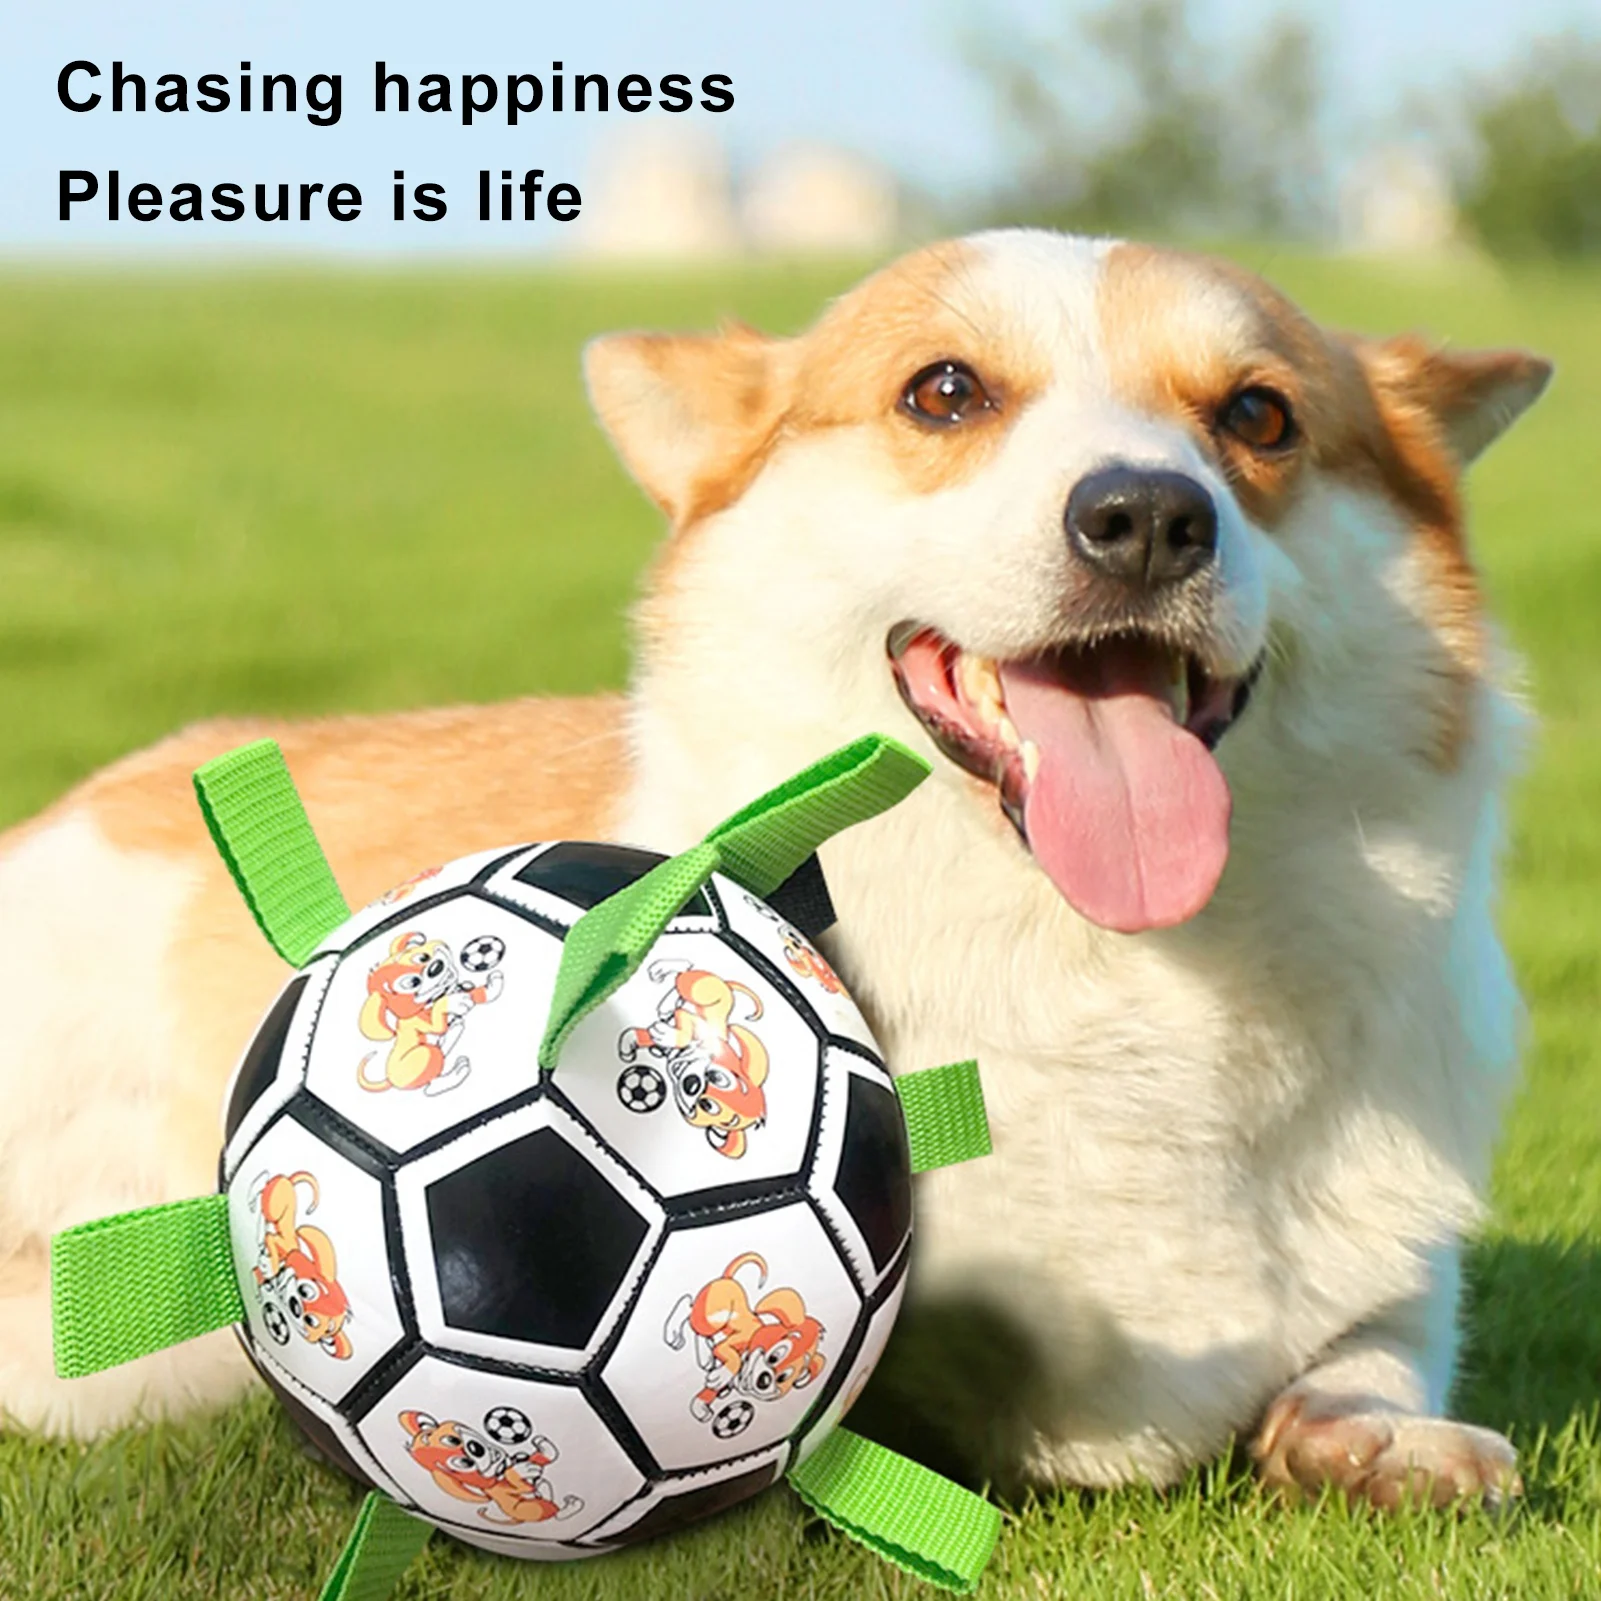 كلب كرة القدم مع الأشرطة التفاعلية الكلب كرات المولي تخفيف الملل الكلب لعب لألعاب شد جلب الكلب الكرة في الهواء الطلق حديقة لعبة